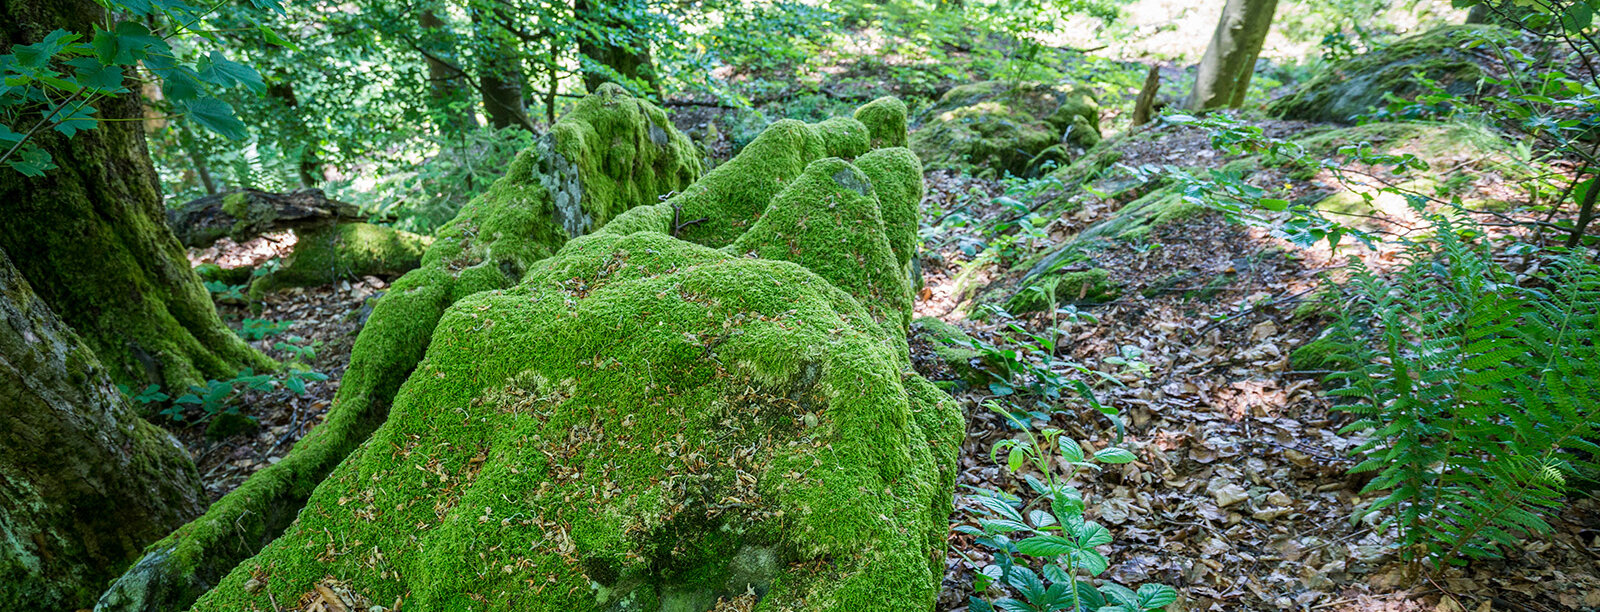 Gesteinslandschaften im Oberpfälzer Wald von Moos bewachsen